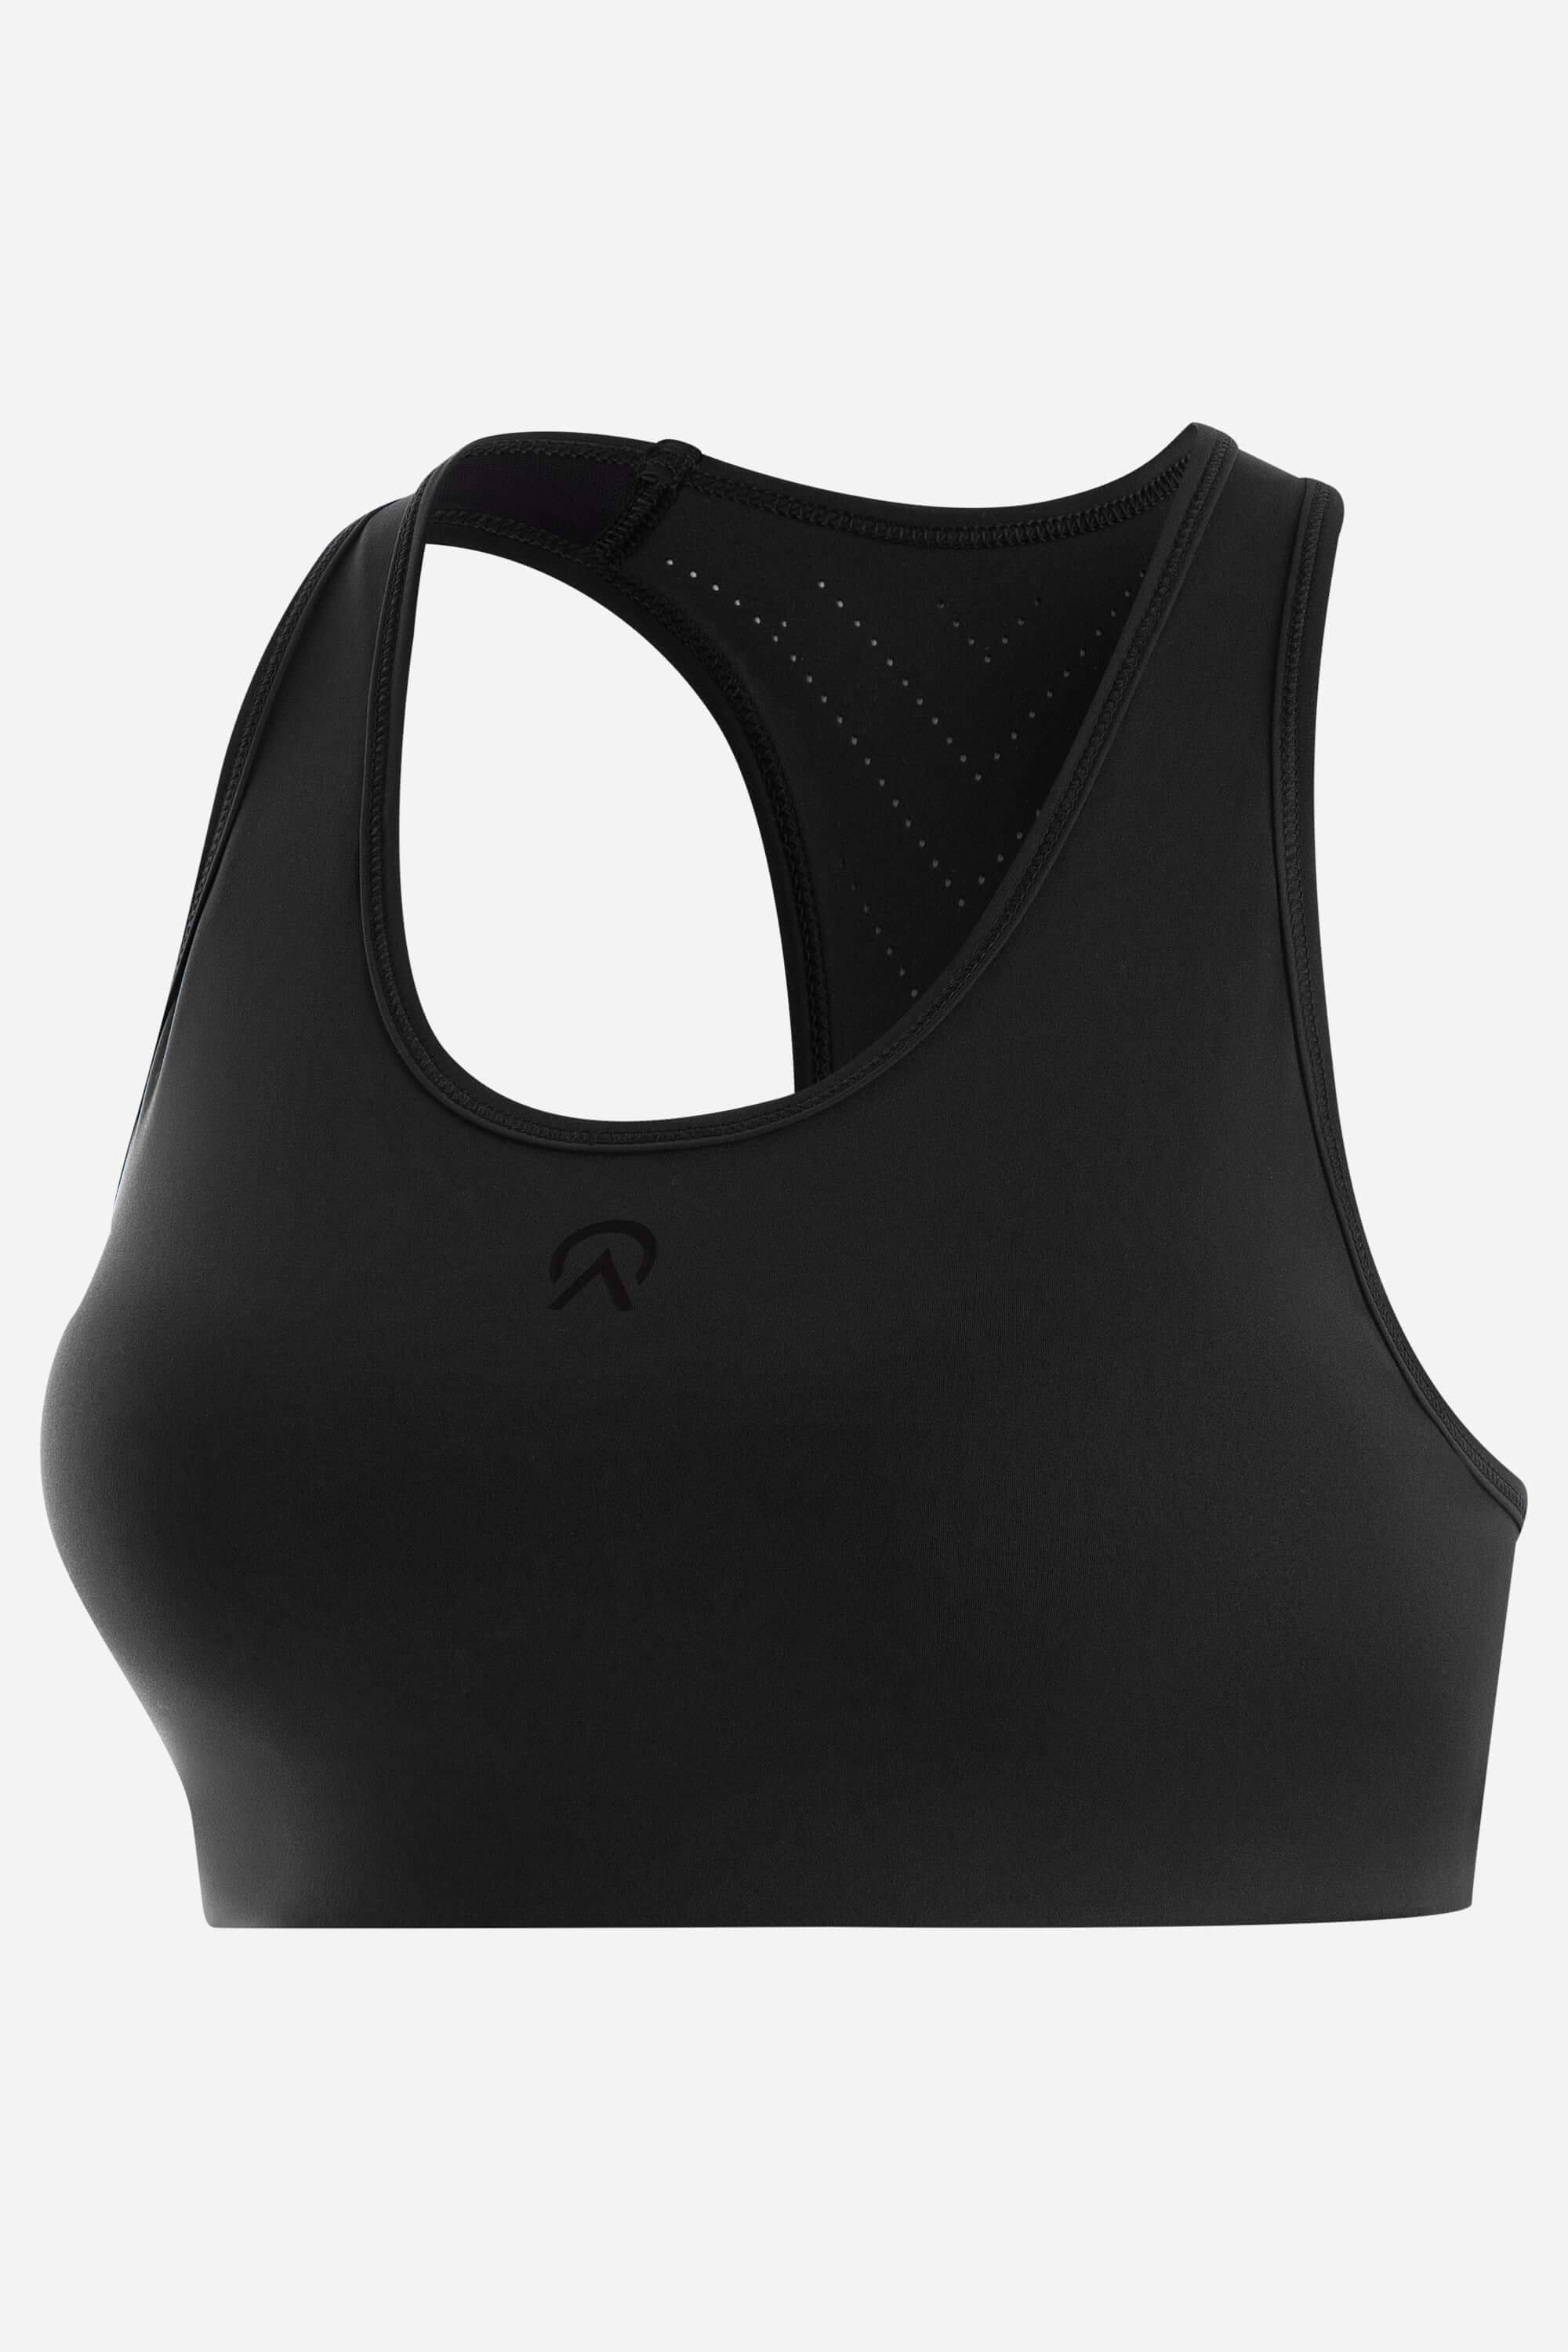 Black sports bra from AYCANE